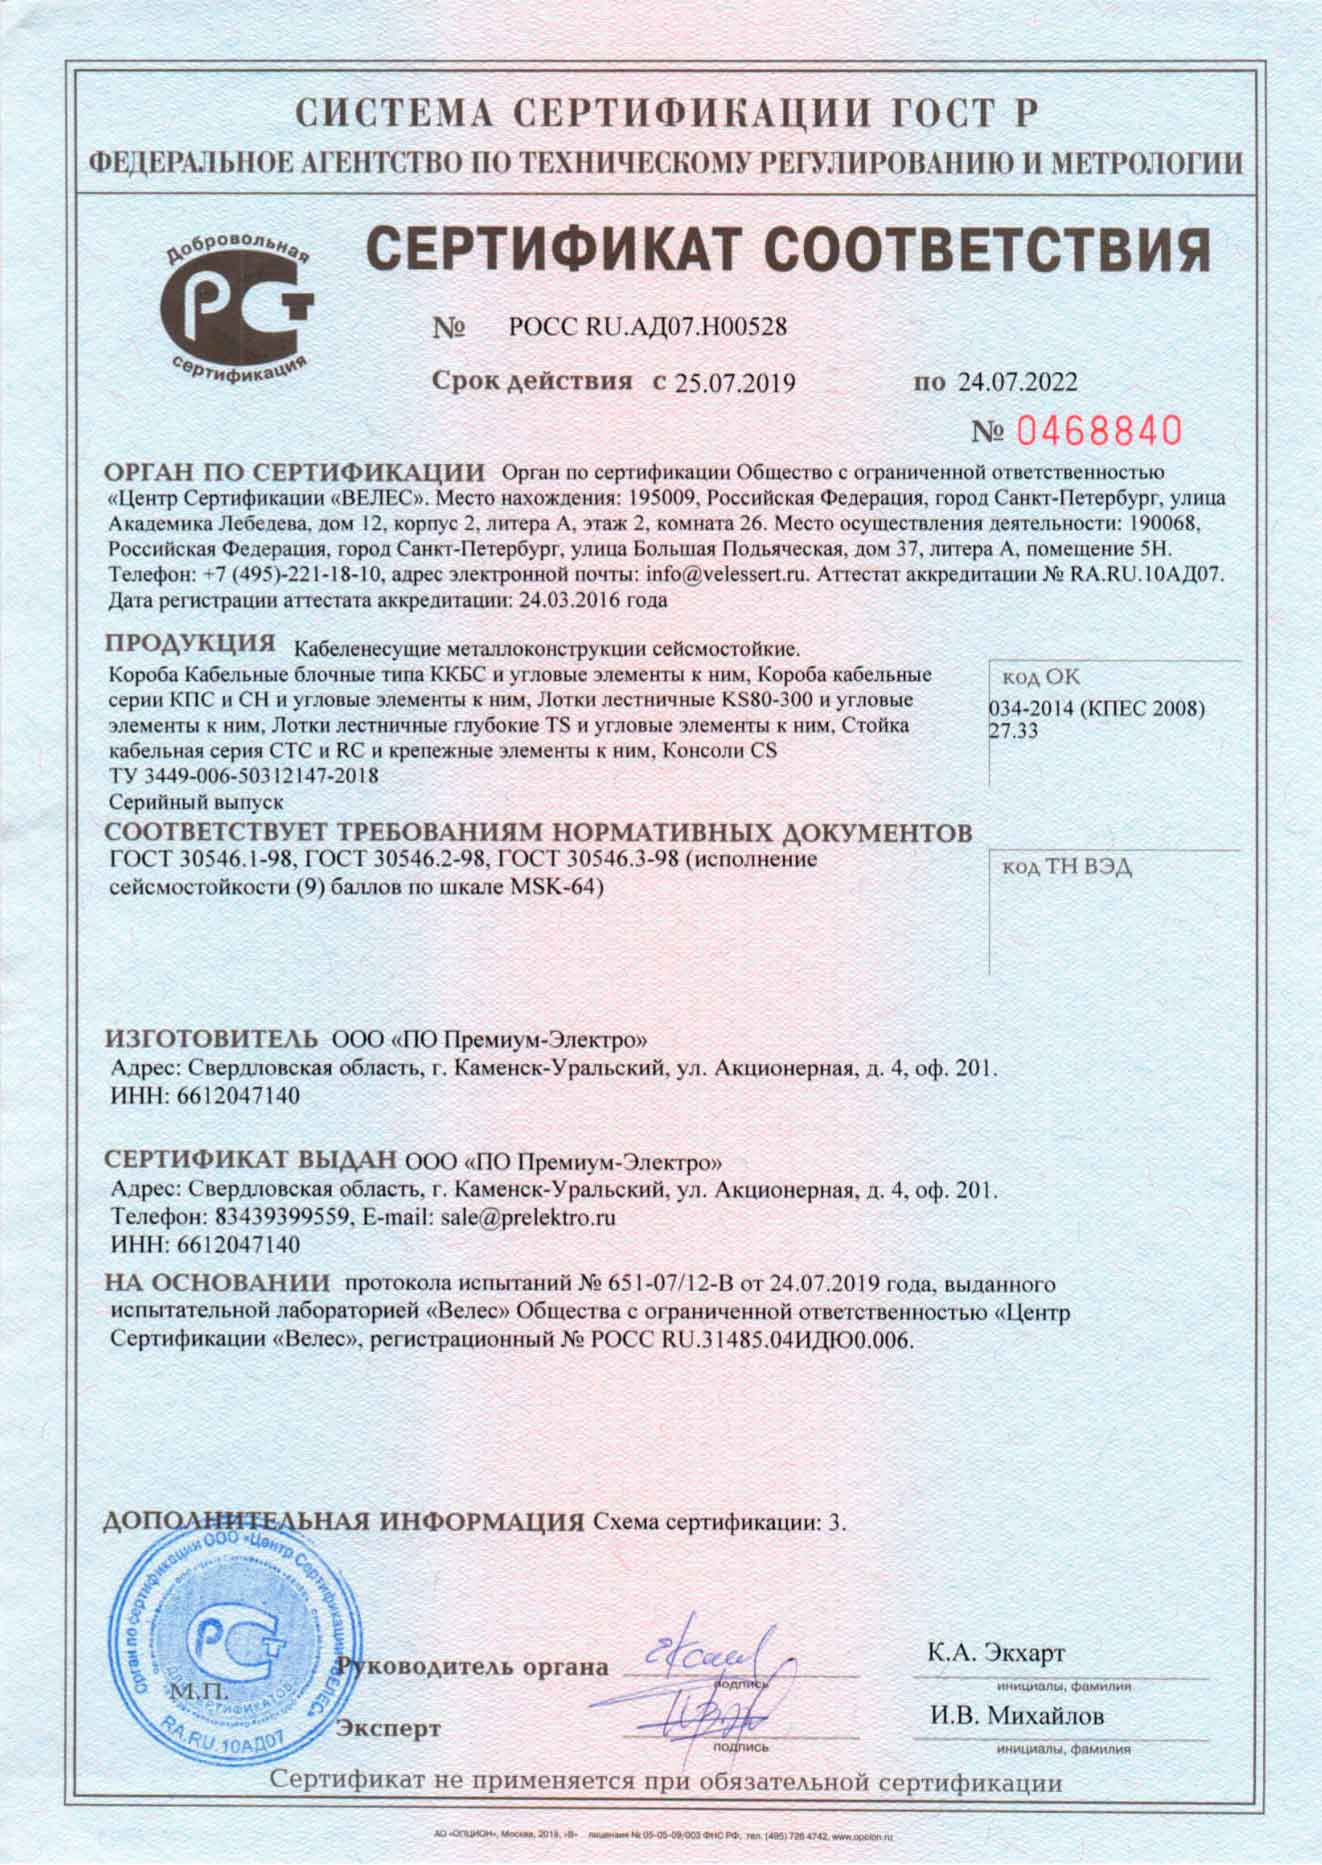 Сертификат соответствия на кабельные короба ККБС кабеленесущие системы